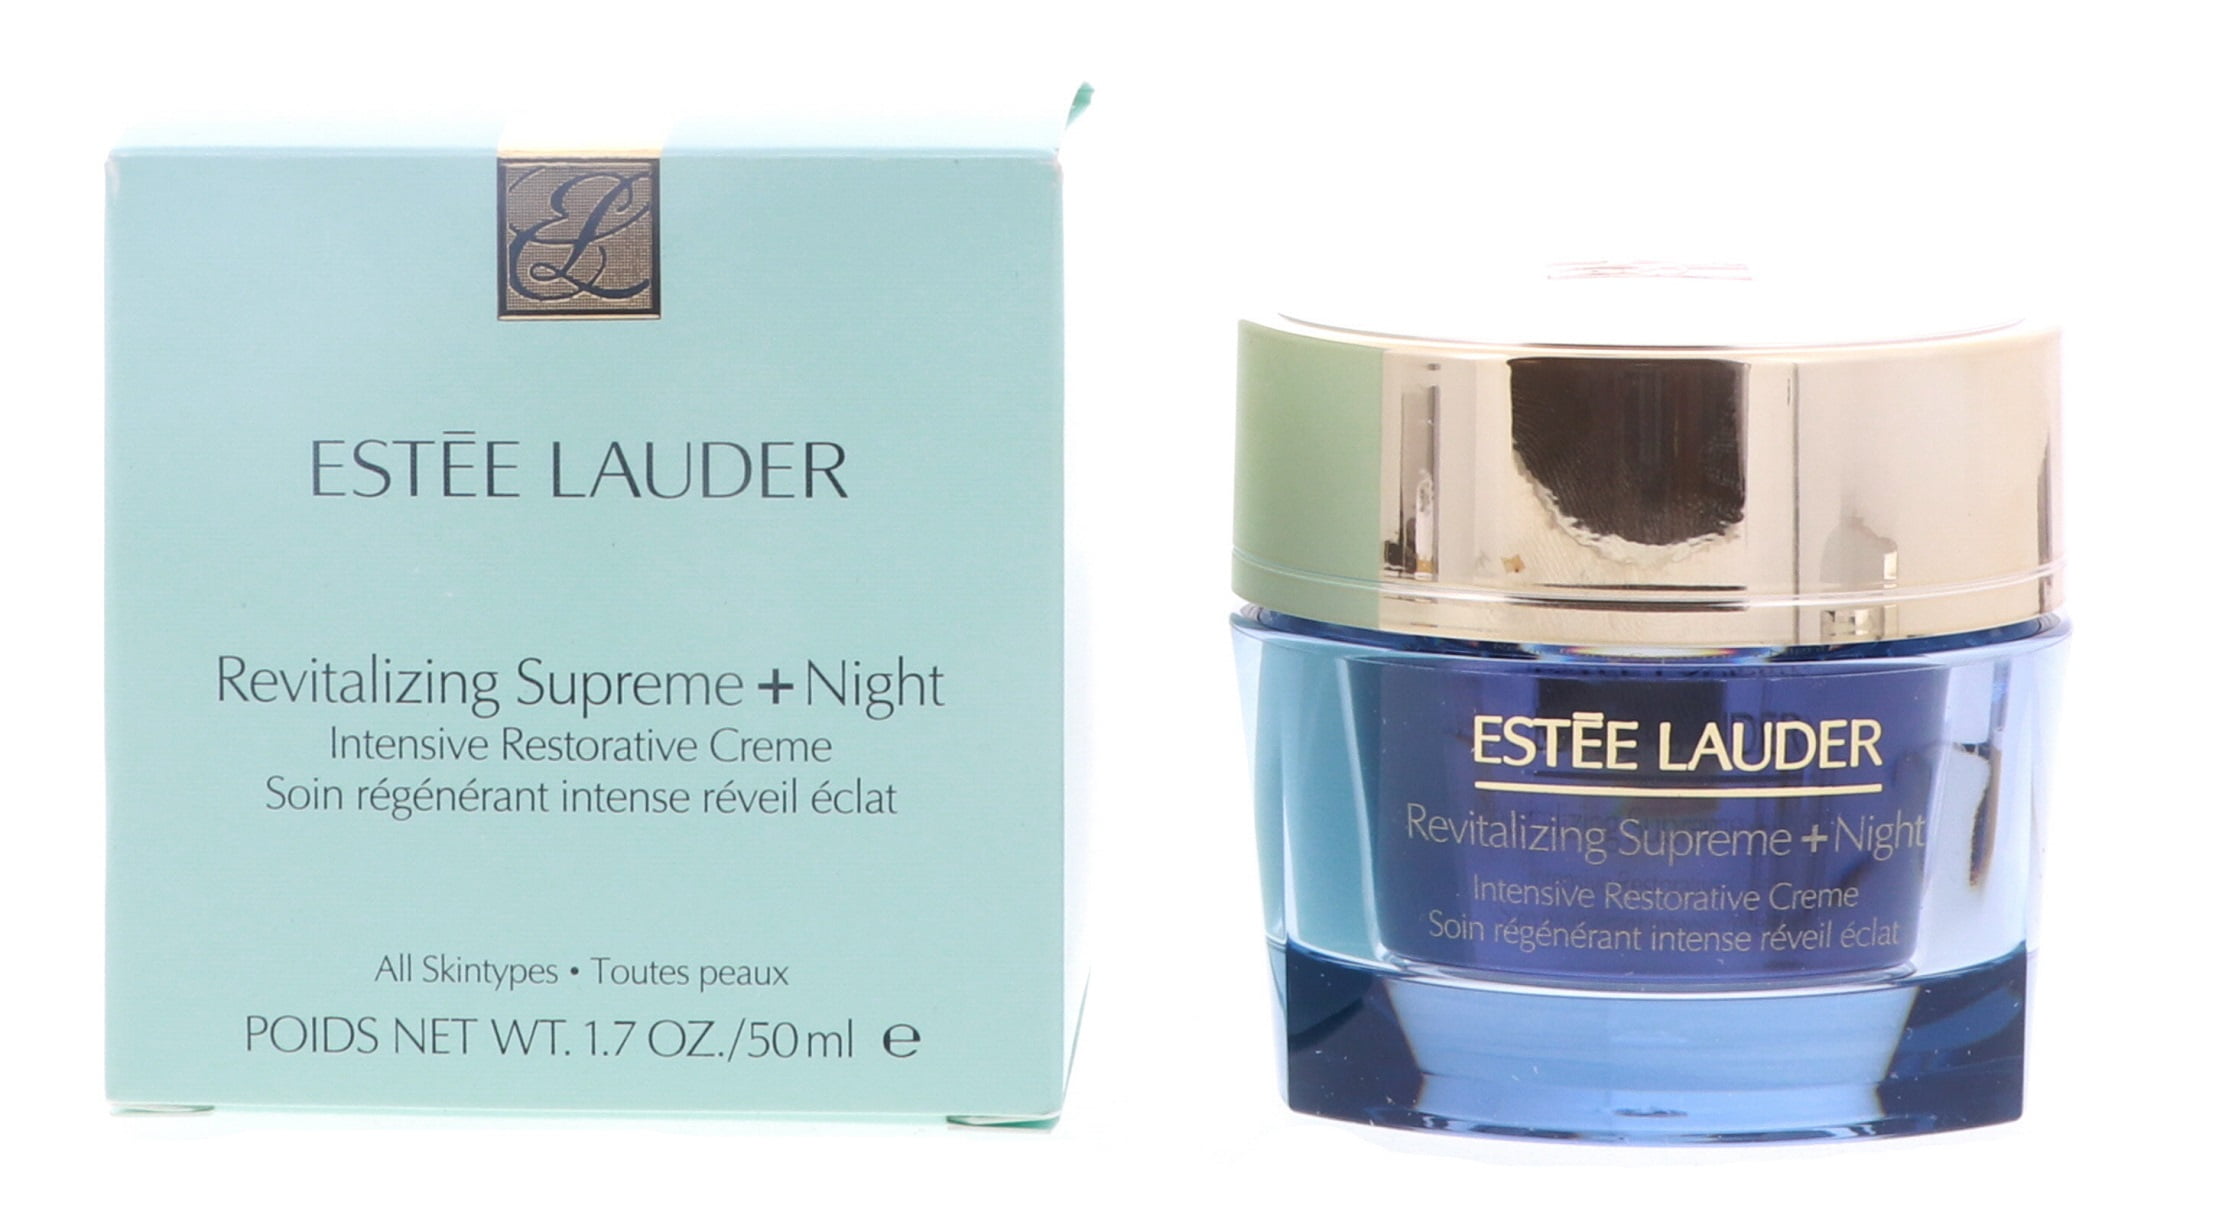 Estee Lauder Revitalizing Supreme + Night